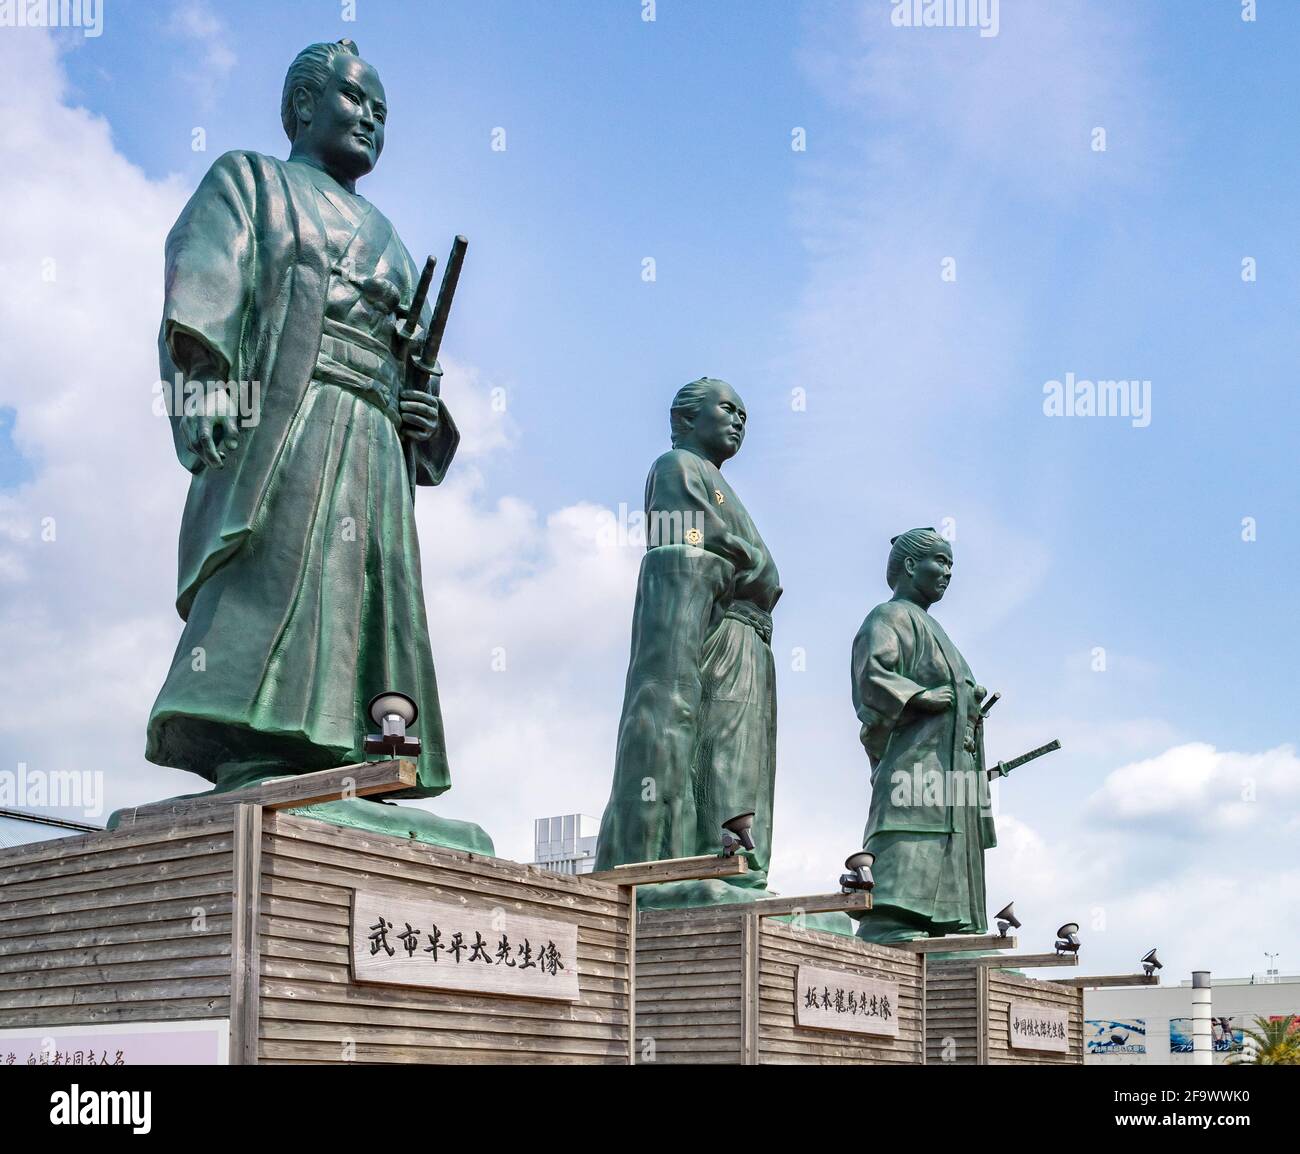 29. März 2019: Kochi City, Japan - Statuen von drei Samurai, die in der Meiji-Restauration, Sakamoto Ryoma, Takechi Hanpeita und Nakaoka prominent waren Stockfoto